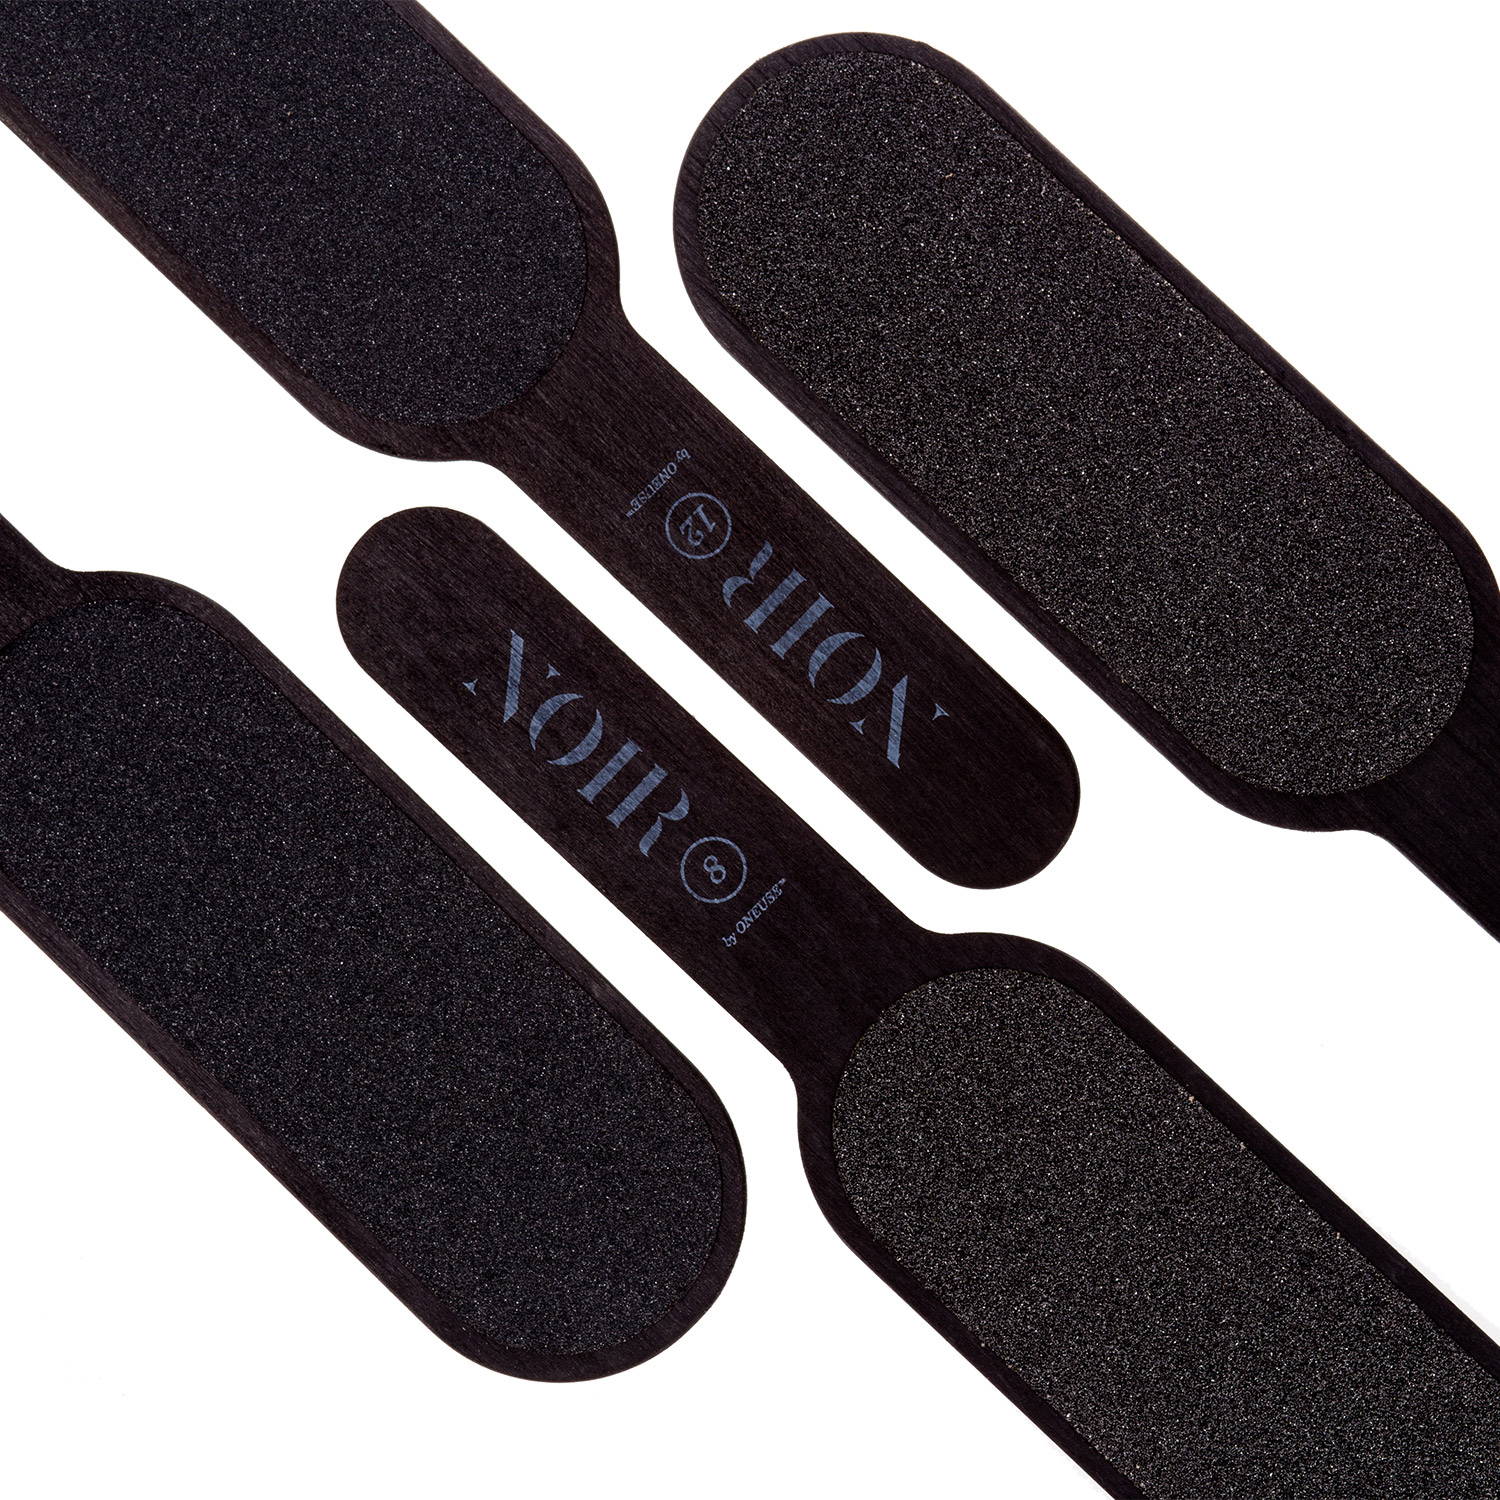 Mia Calnea noir 40-pack waterproof oneuse™ foot files grit 80/120 black - 6009133 PEDICURE FOOT FILES